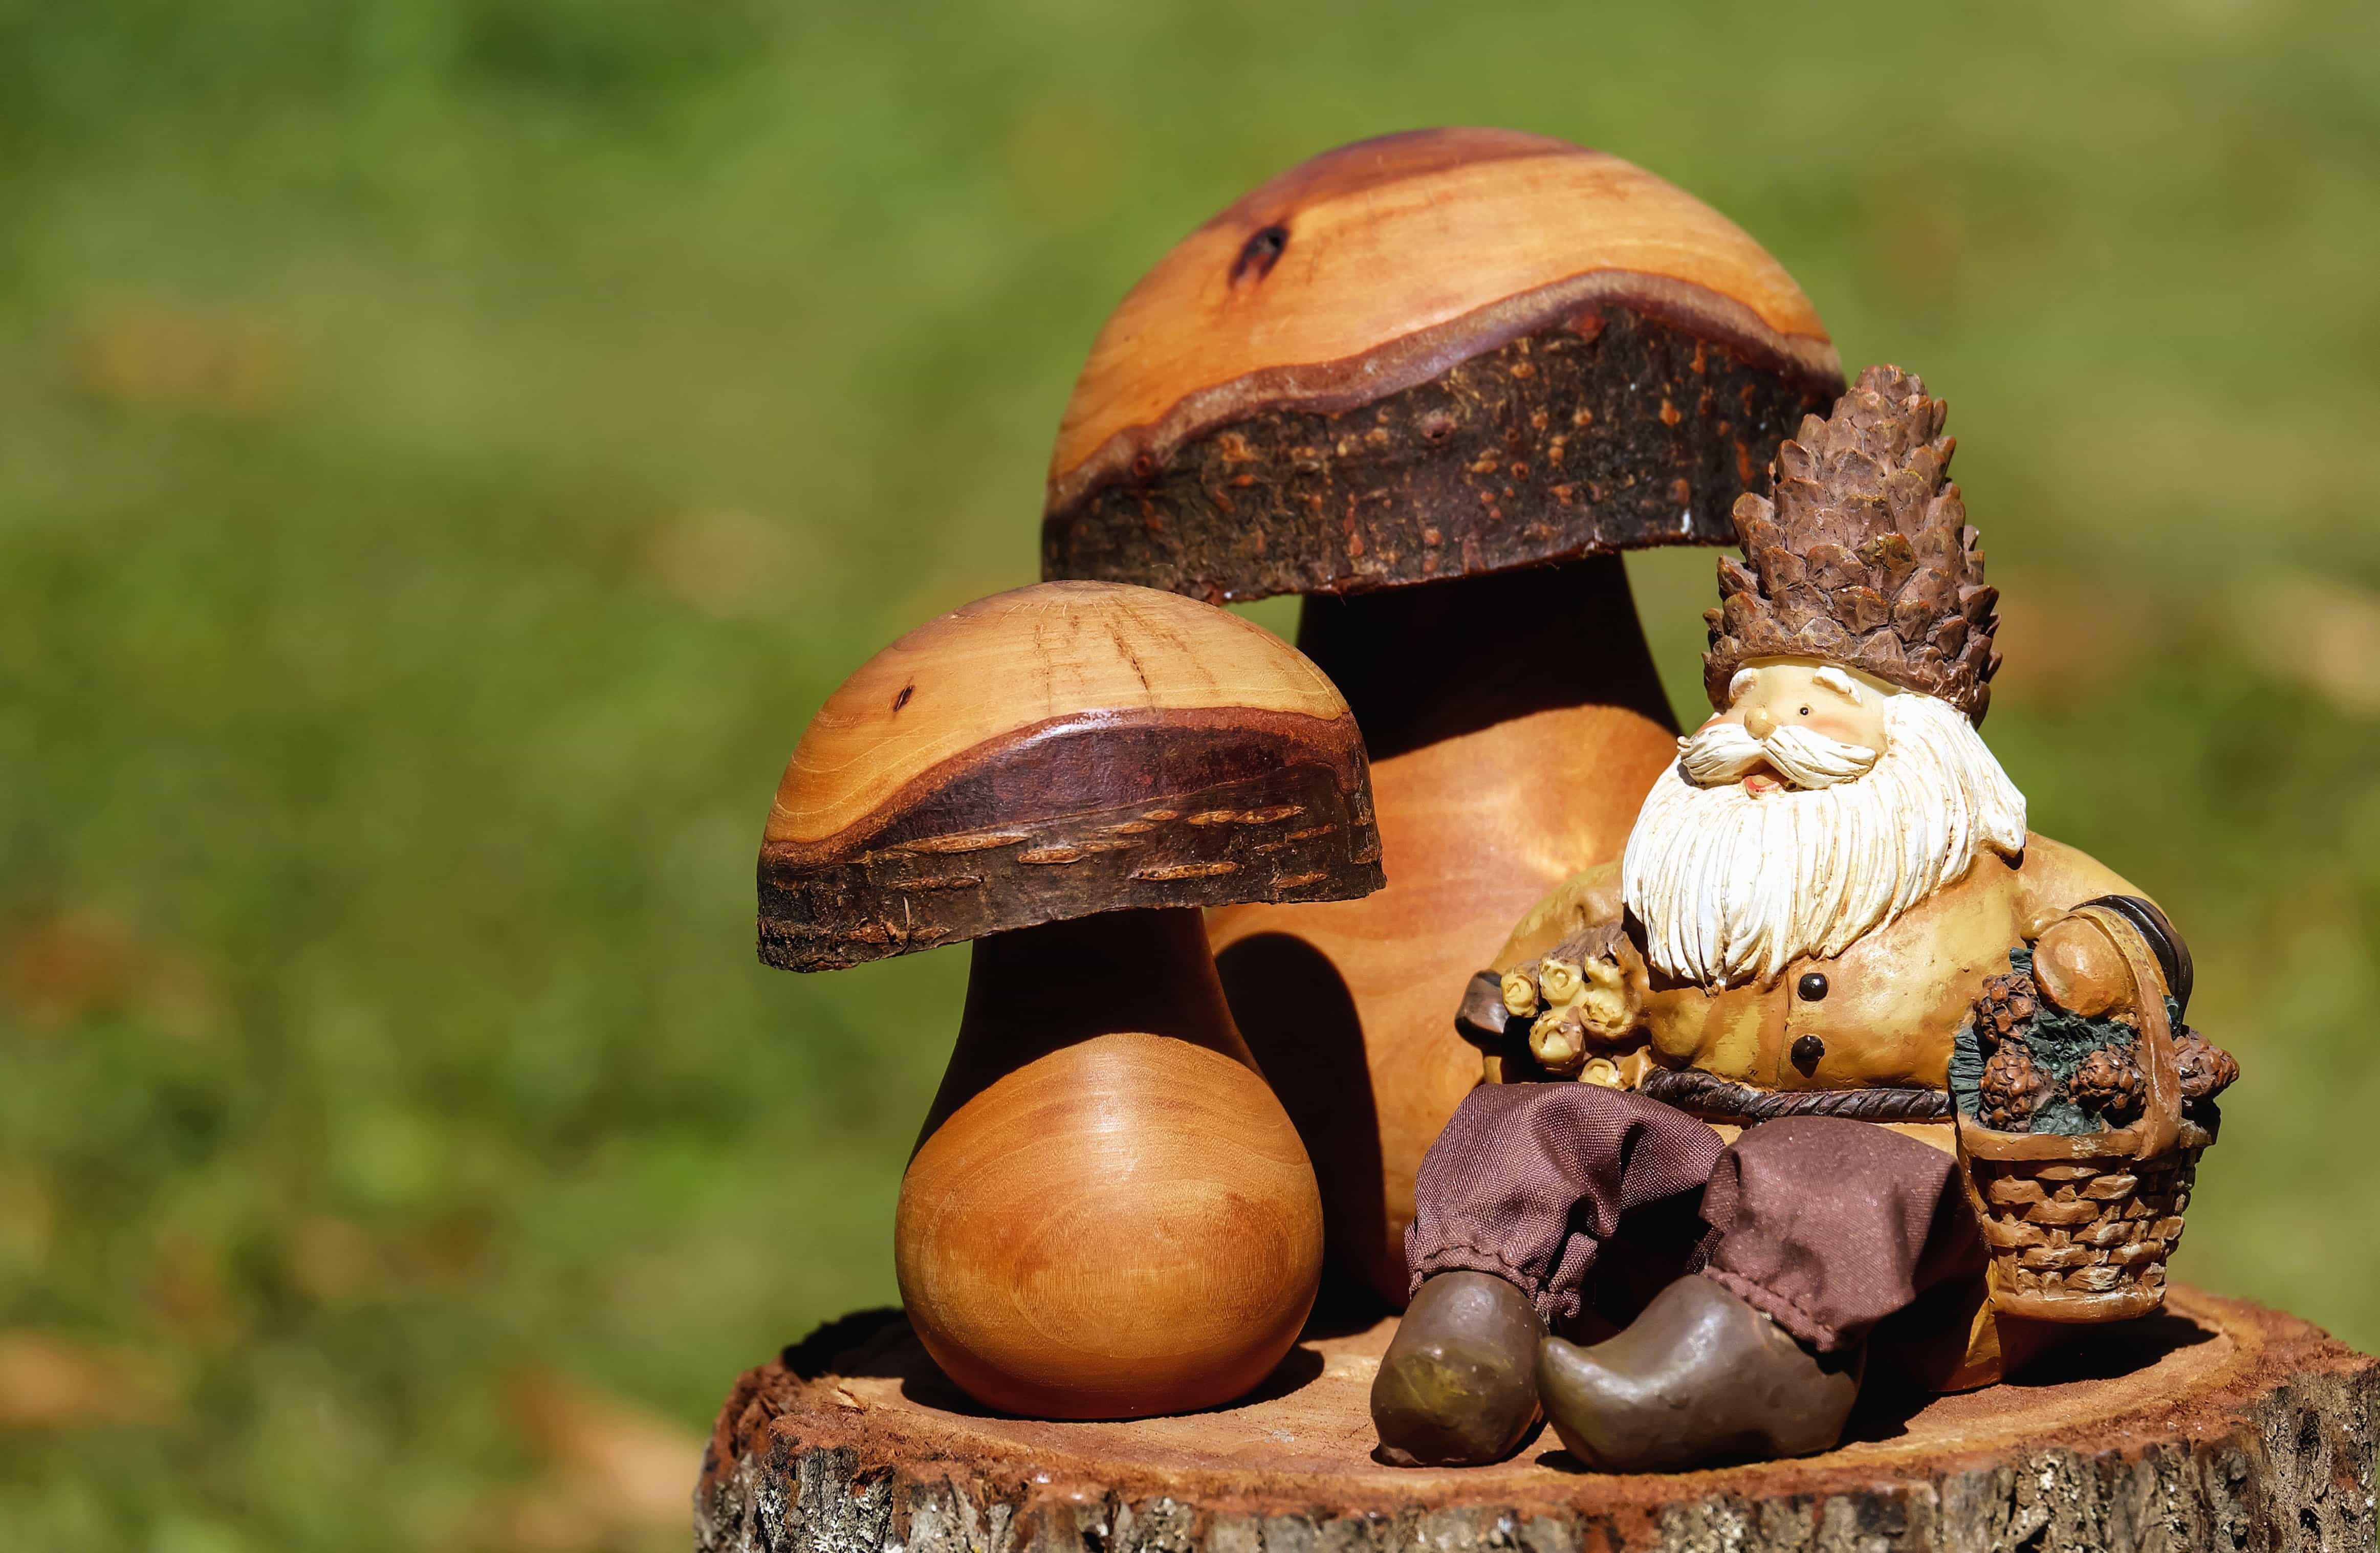 Image libre: champignons, nature morte, jouets, bois, sculpture, art, poupée